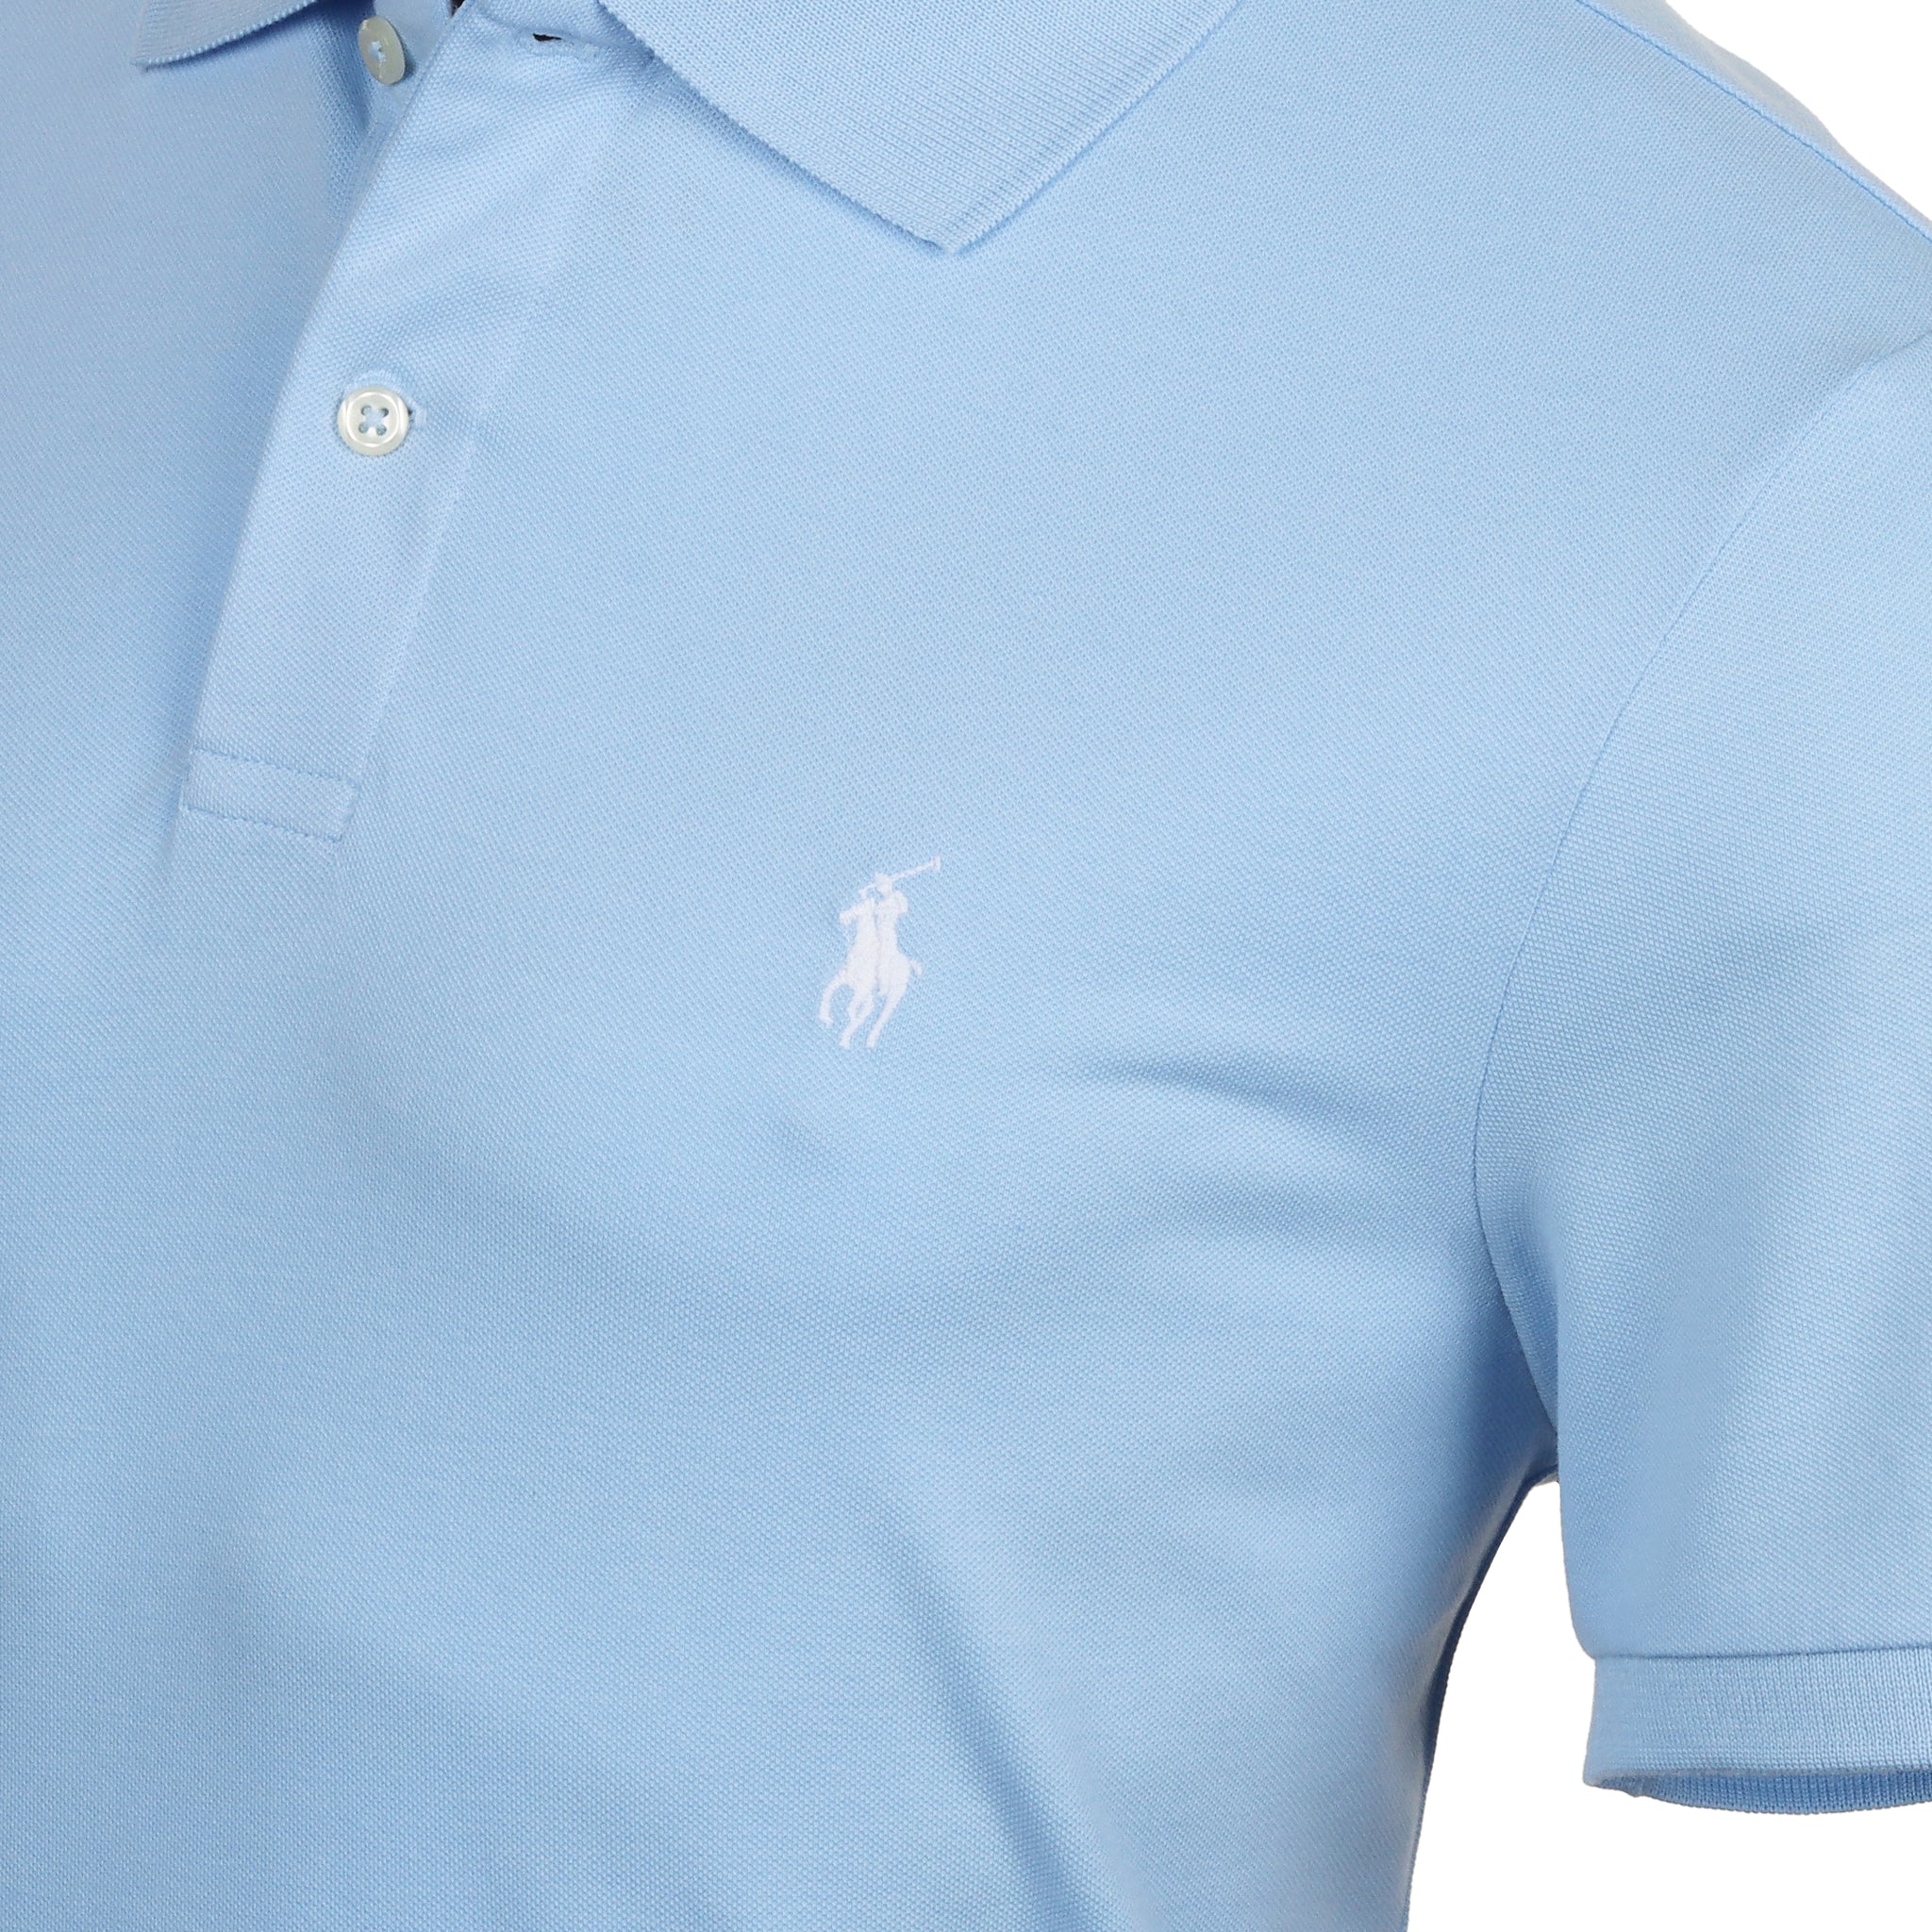 polo-golf-ralph-lauren-stretch-pique-shirt-710939753-office-blue-004